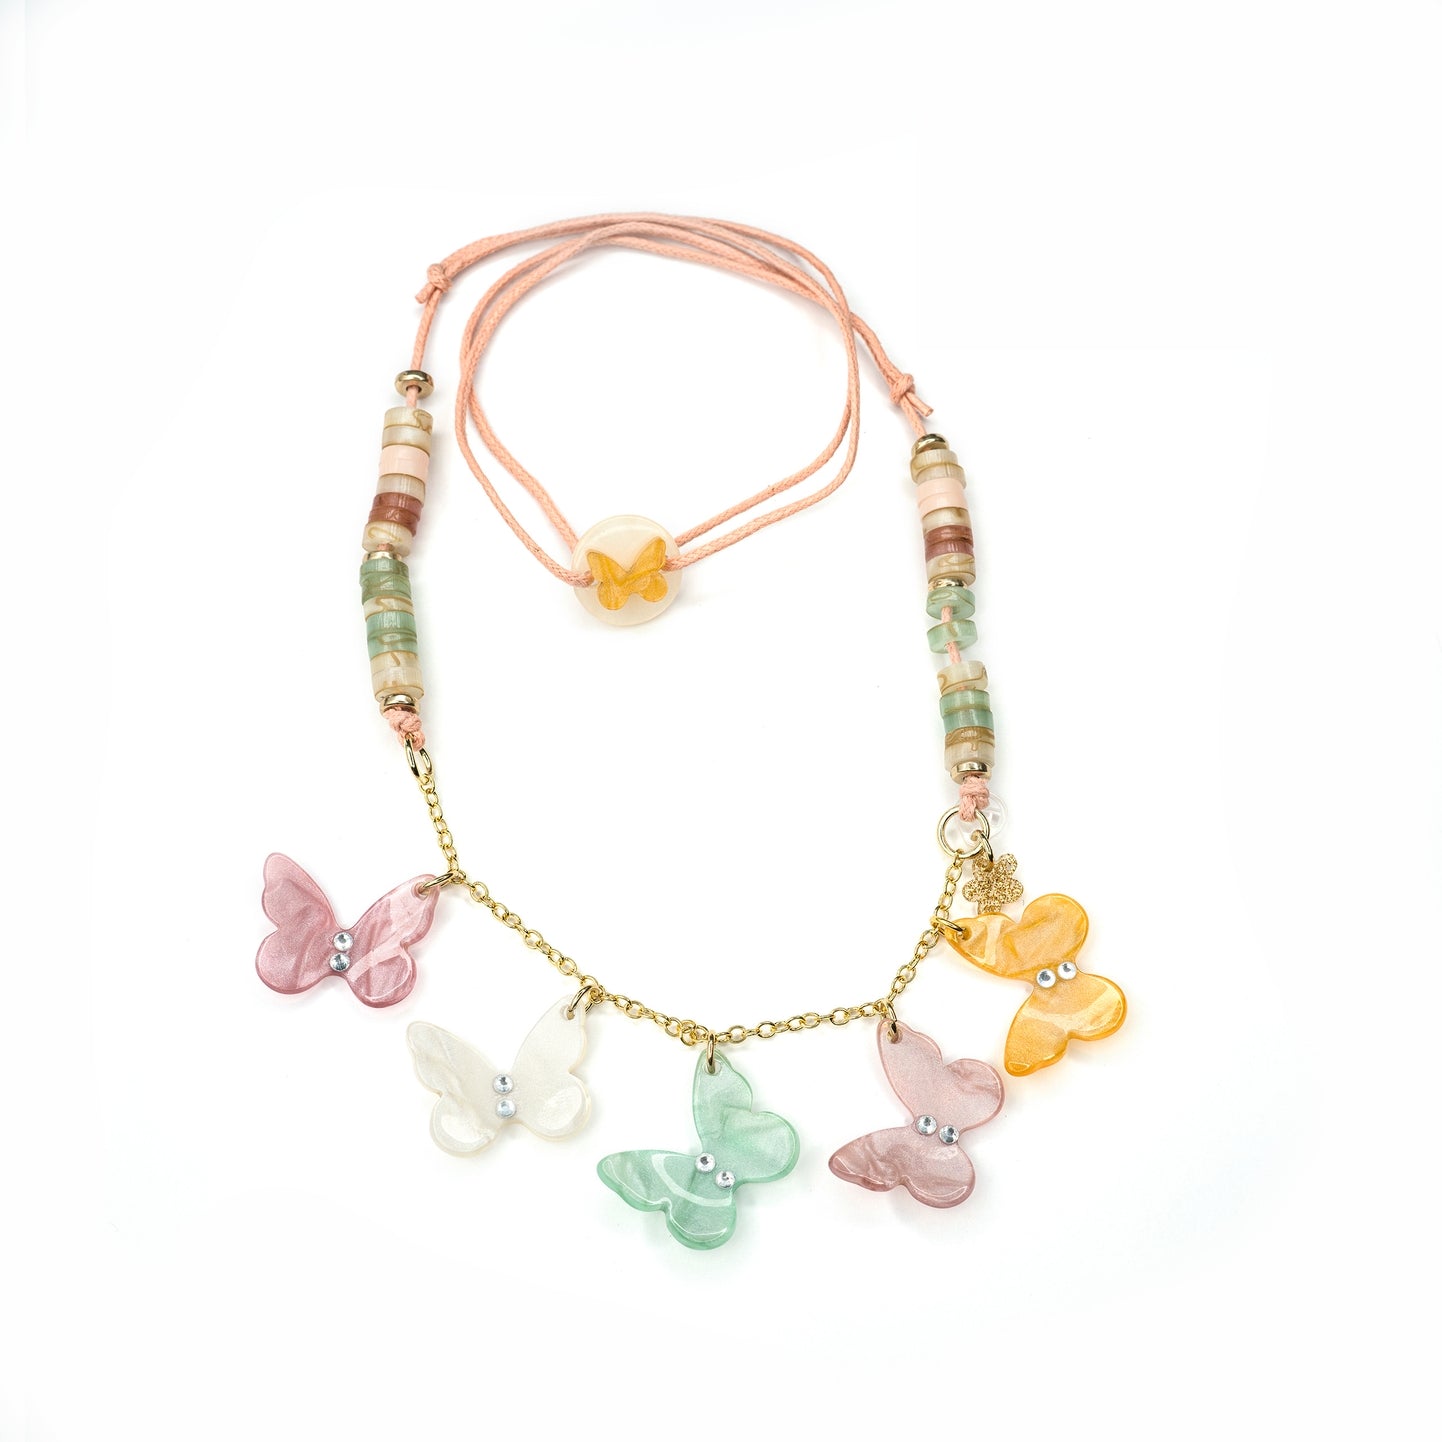 Butterflies Pearlized Pastel Necklace - Twinkle Twinkle Little One